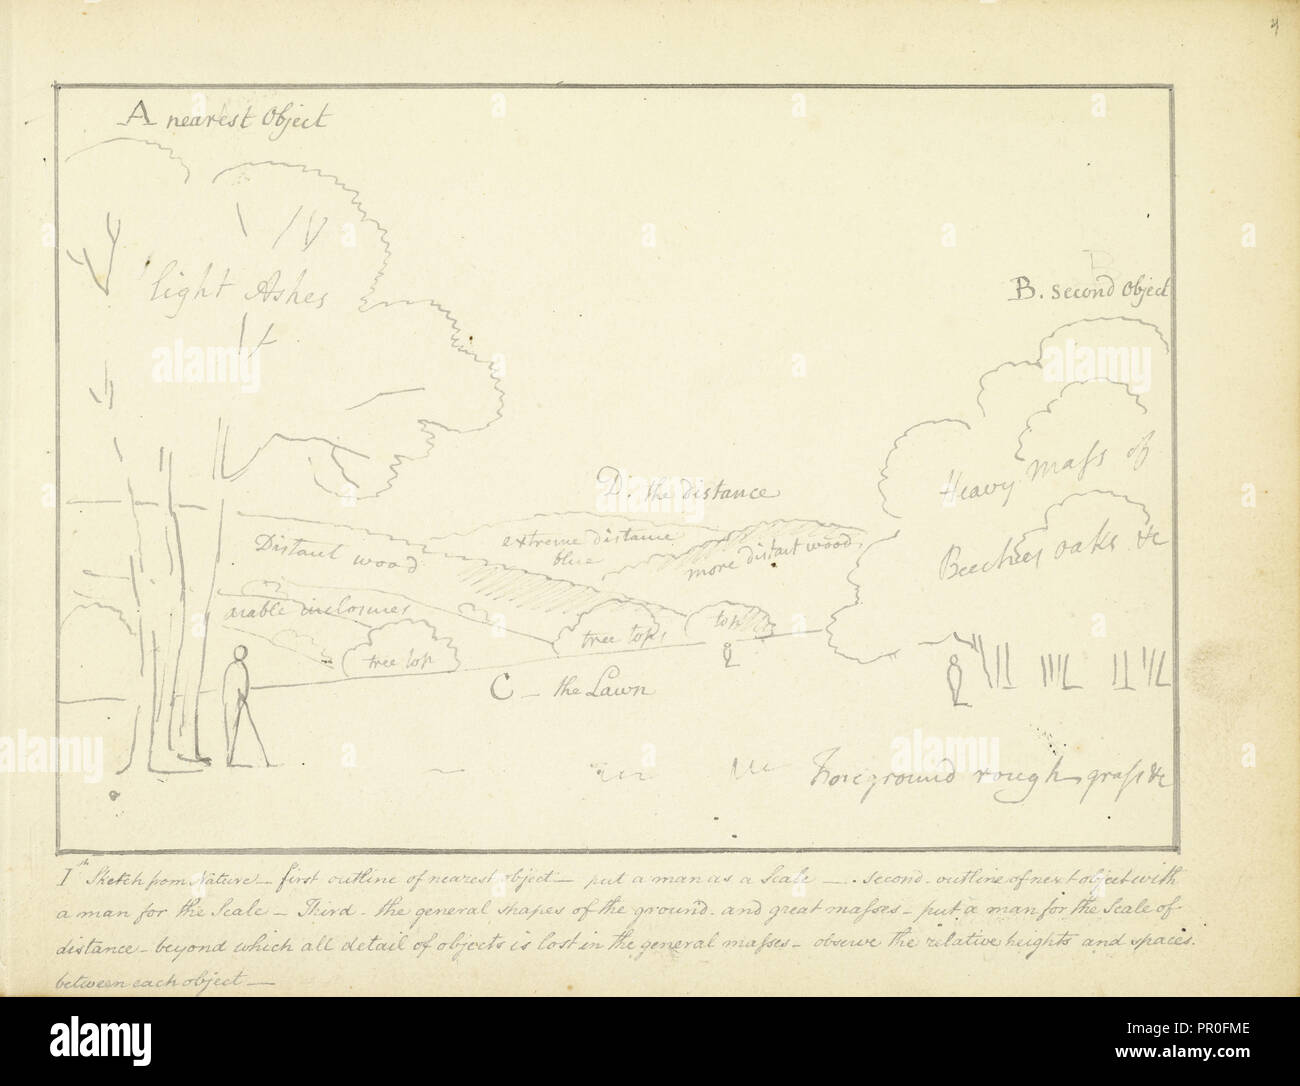 Ich Skizze aus Natur, ein paar Hinweise über landschaftsskizzen, Ca. 1810, Humphry Repton Architektur und Landschaft Designs Stockfoto